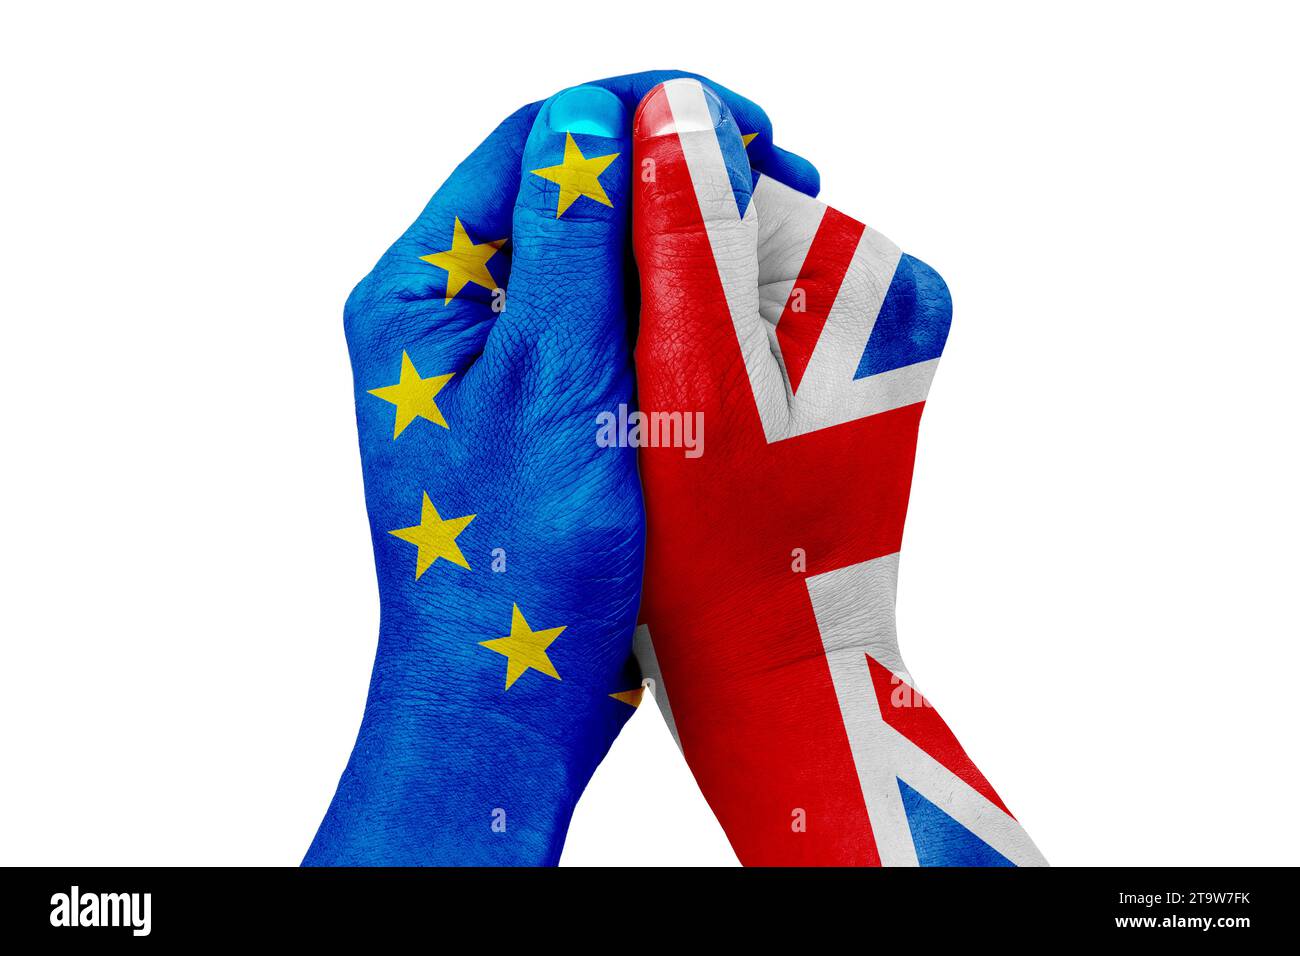 brexit, modellata a mano con la bandiera blu dell'unione europea e una mano modellata con la bandiera della gran bretagna su sfondo bianco, vota referendum per il concetto di uscita dal regno unito Foto Stock